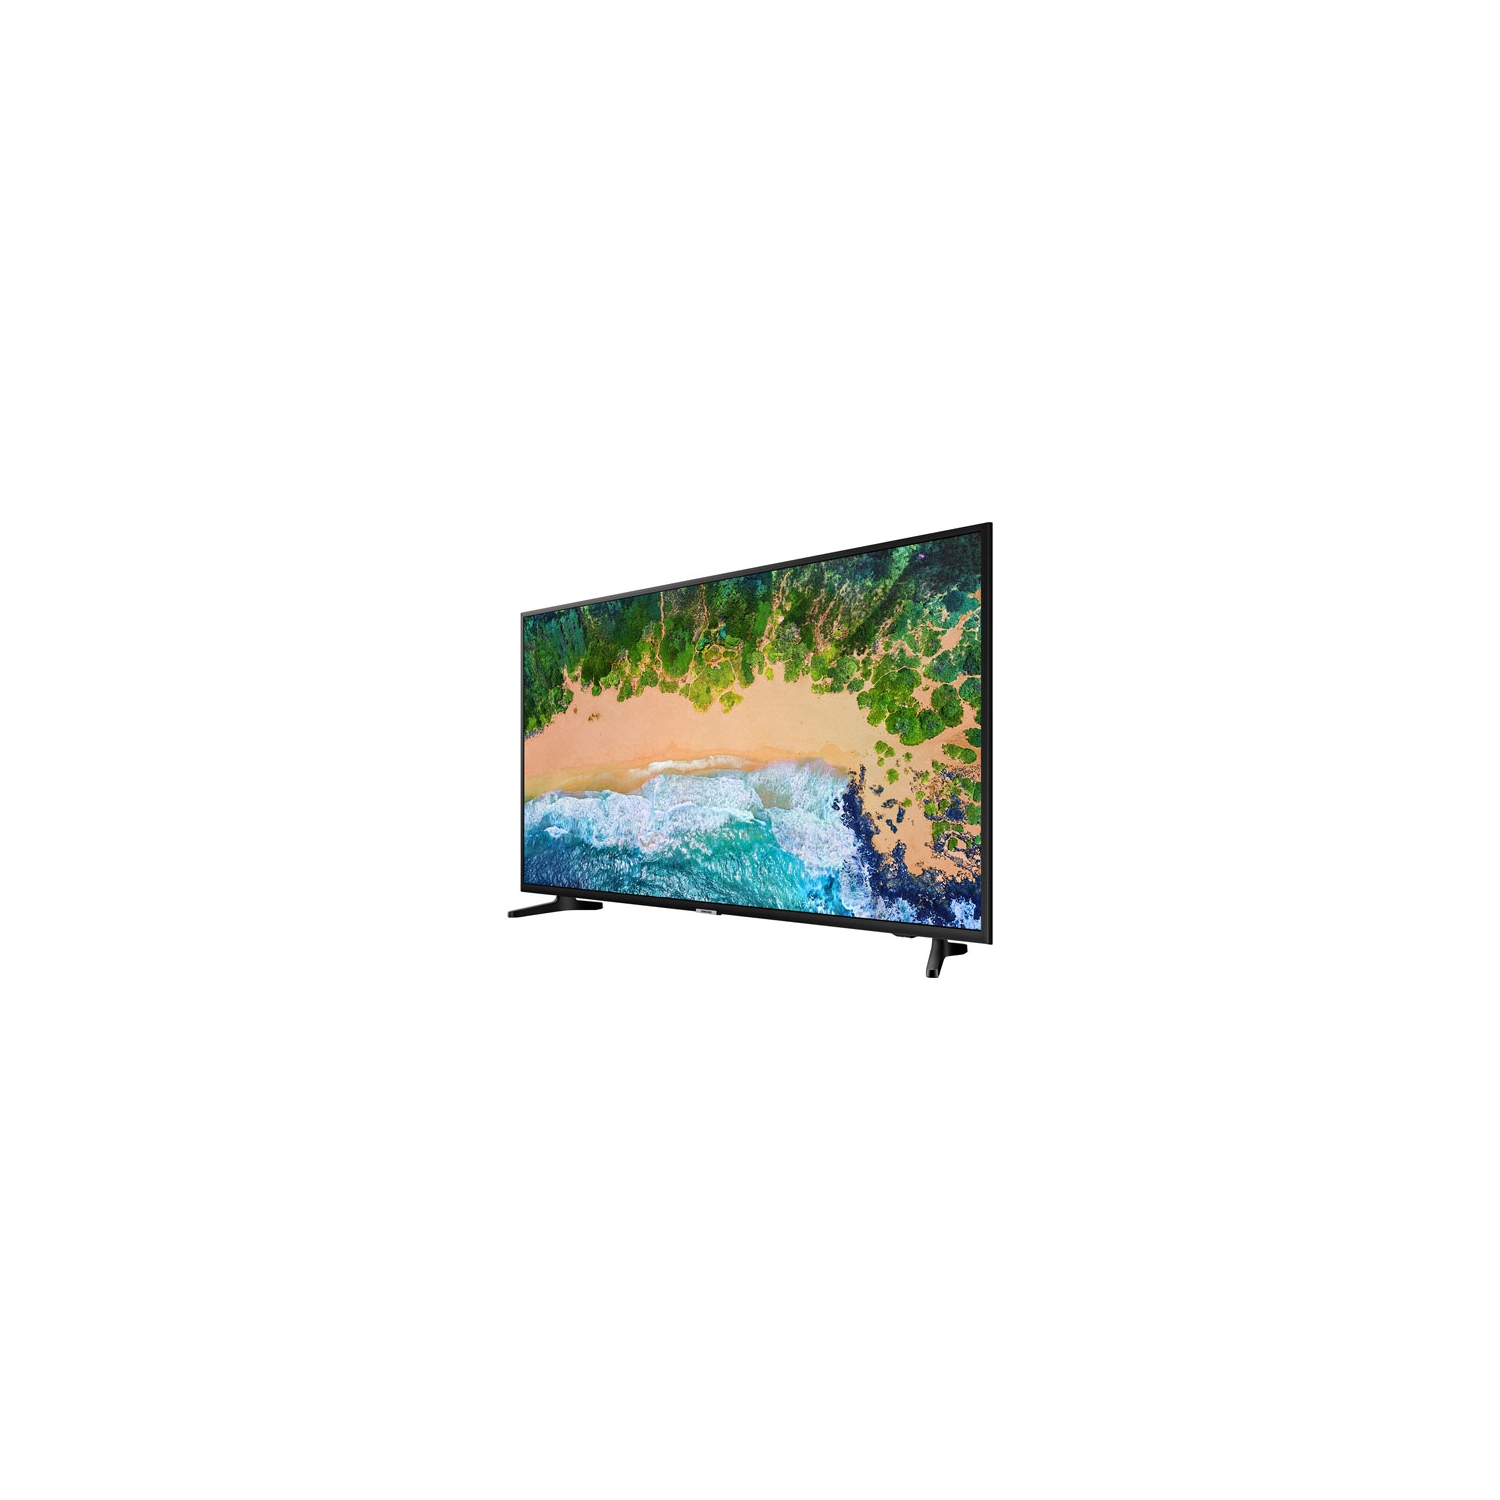 Samsung 43" 4K UHD HDR LED Tizen Smart TV (UN43NU6900FXZC) - Open Box